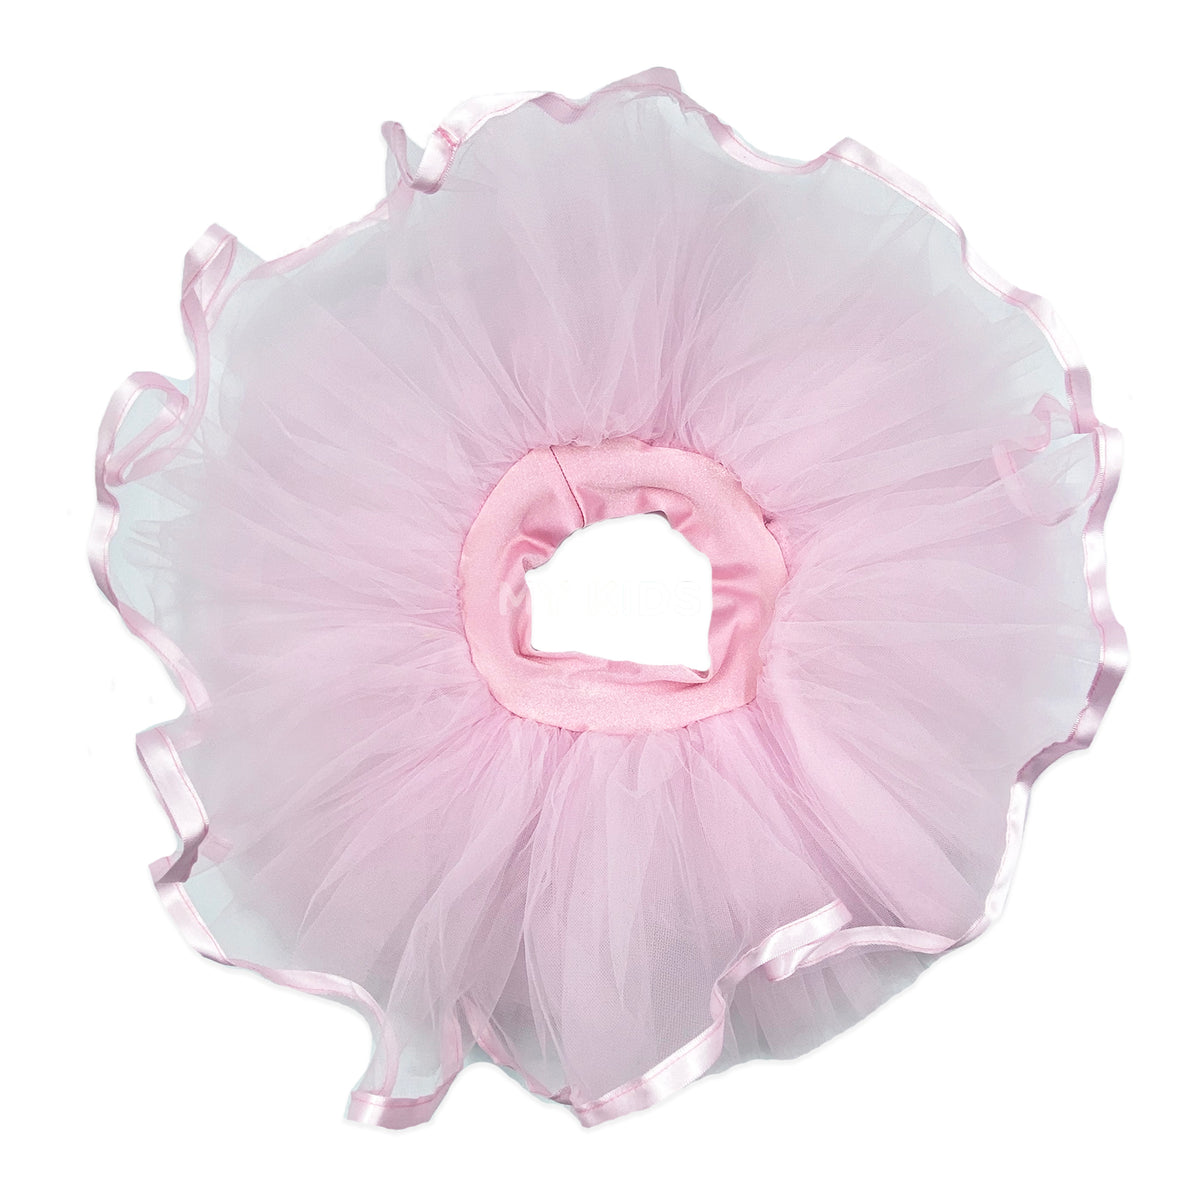 Tul rosa pastel - la mayor variedad de colores de tejido tul en PUGUTEXTILE